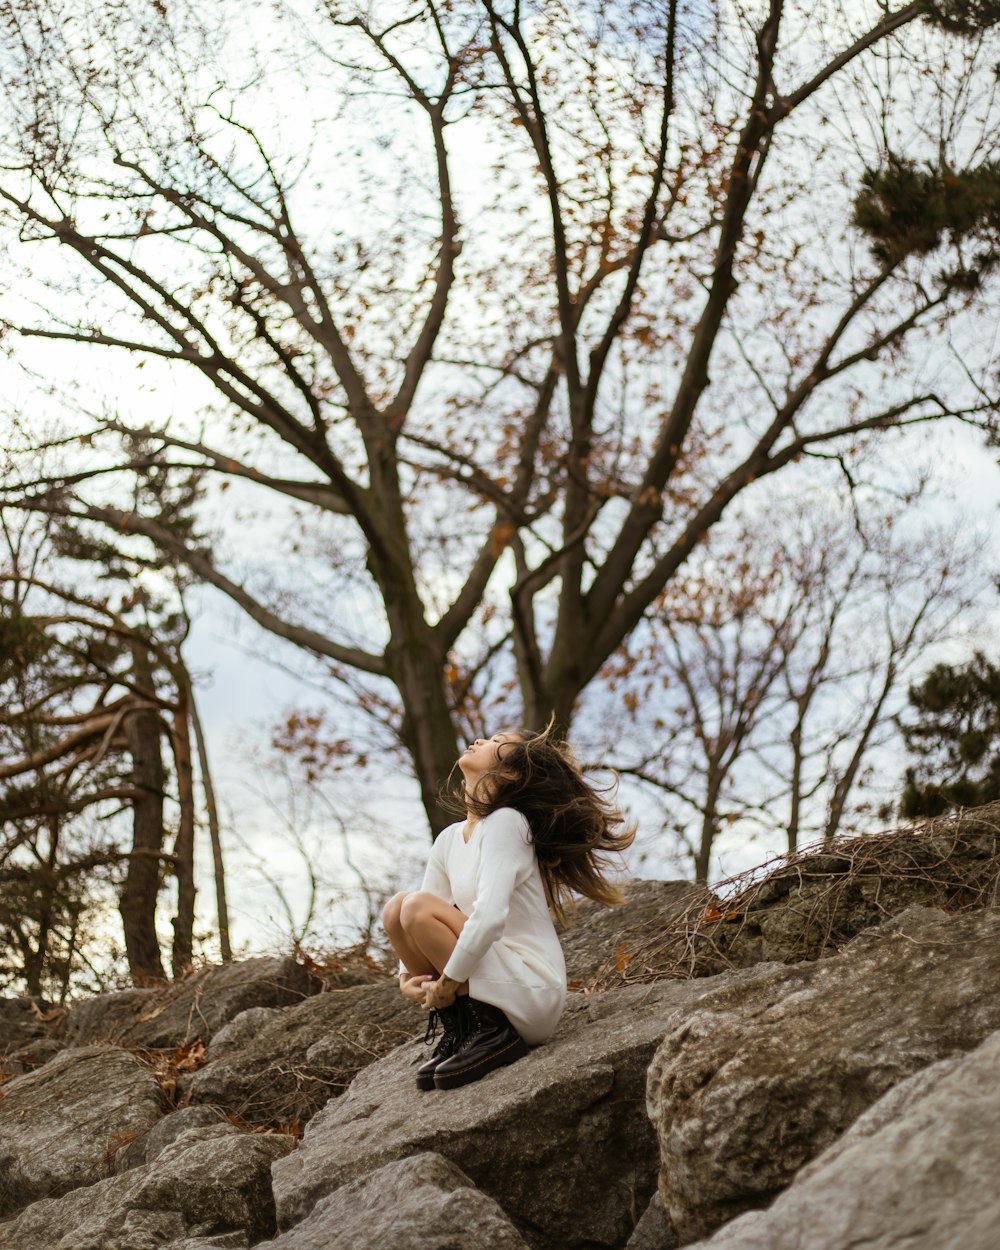 Una ragazza seduta su una roccia nel bosco